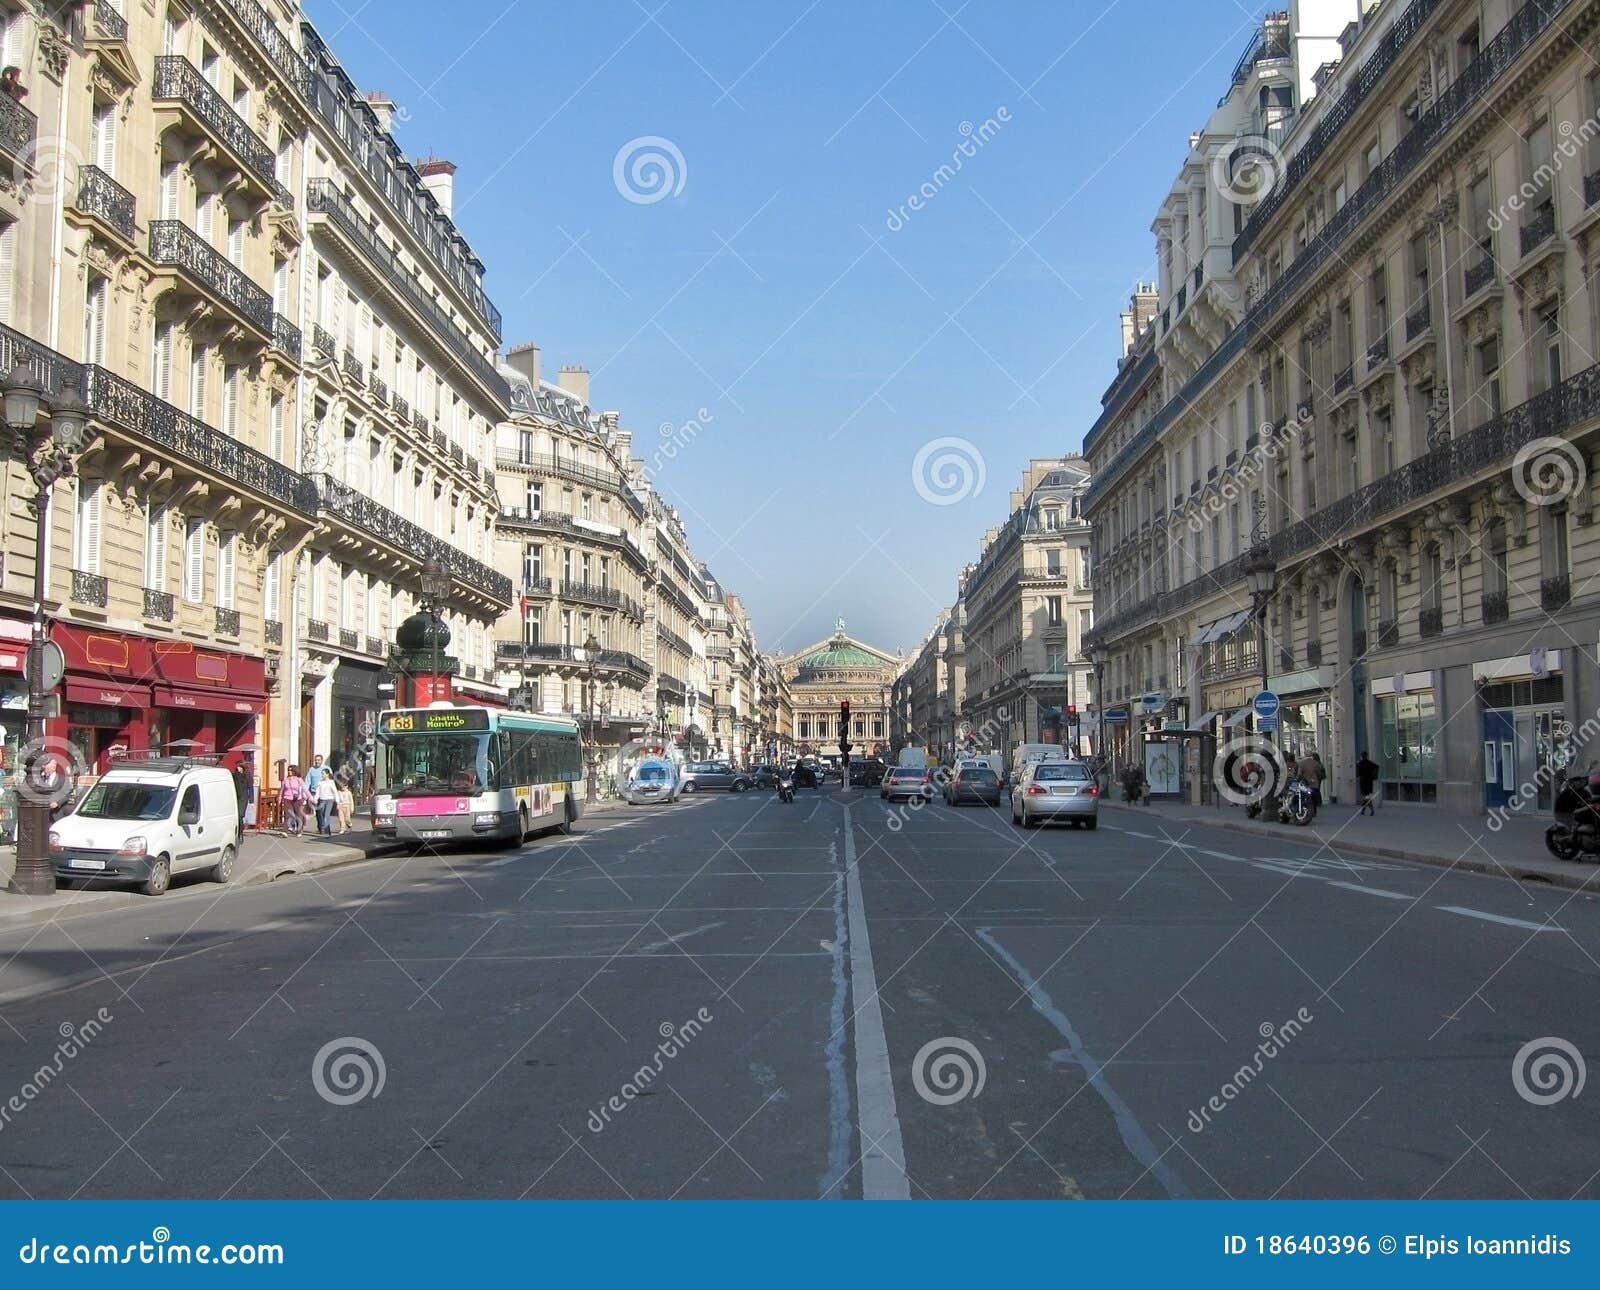 parisian avenue